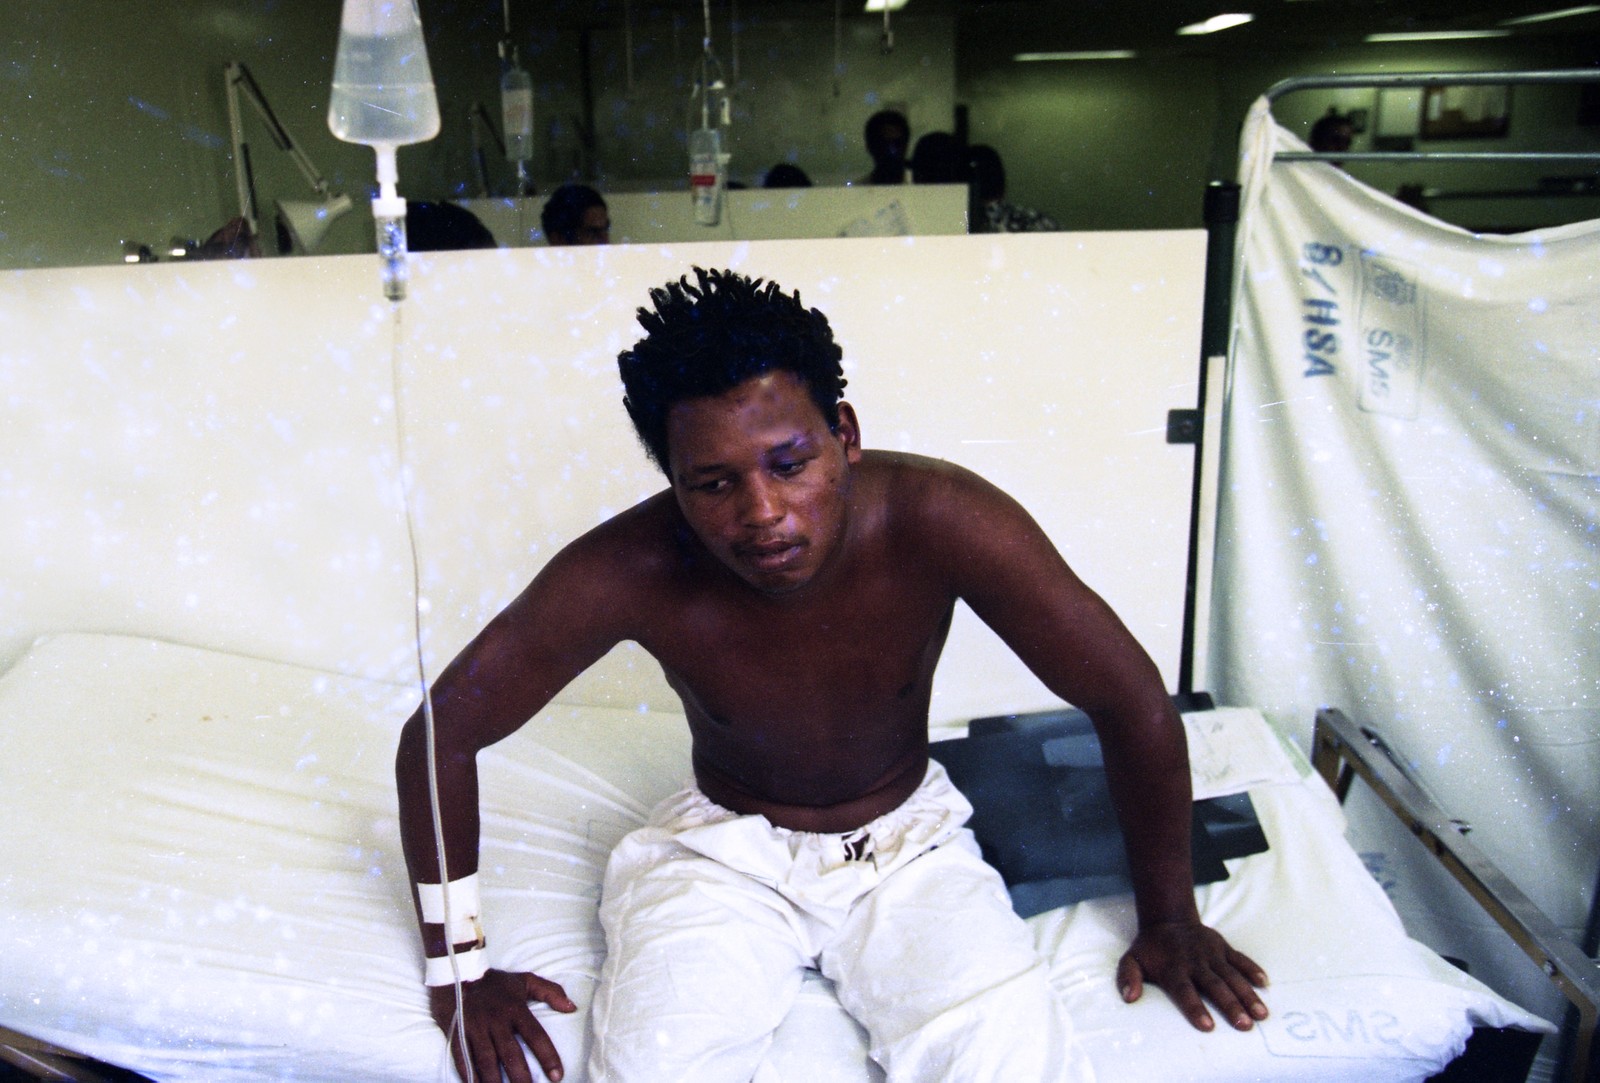 Wagner dos Santos, sobrevivente e principal testemunha da chacina, no Hospital Souza Aguiar após ser baleado na Central do Brasil, em dezembro de 1994 — Foto: Fernando Maia / Agência O Globo